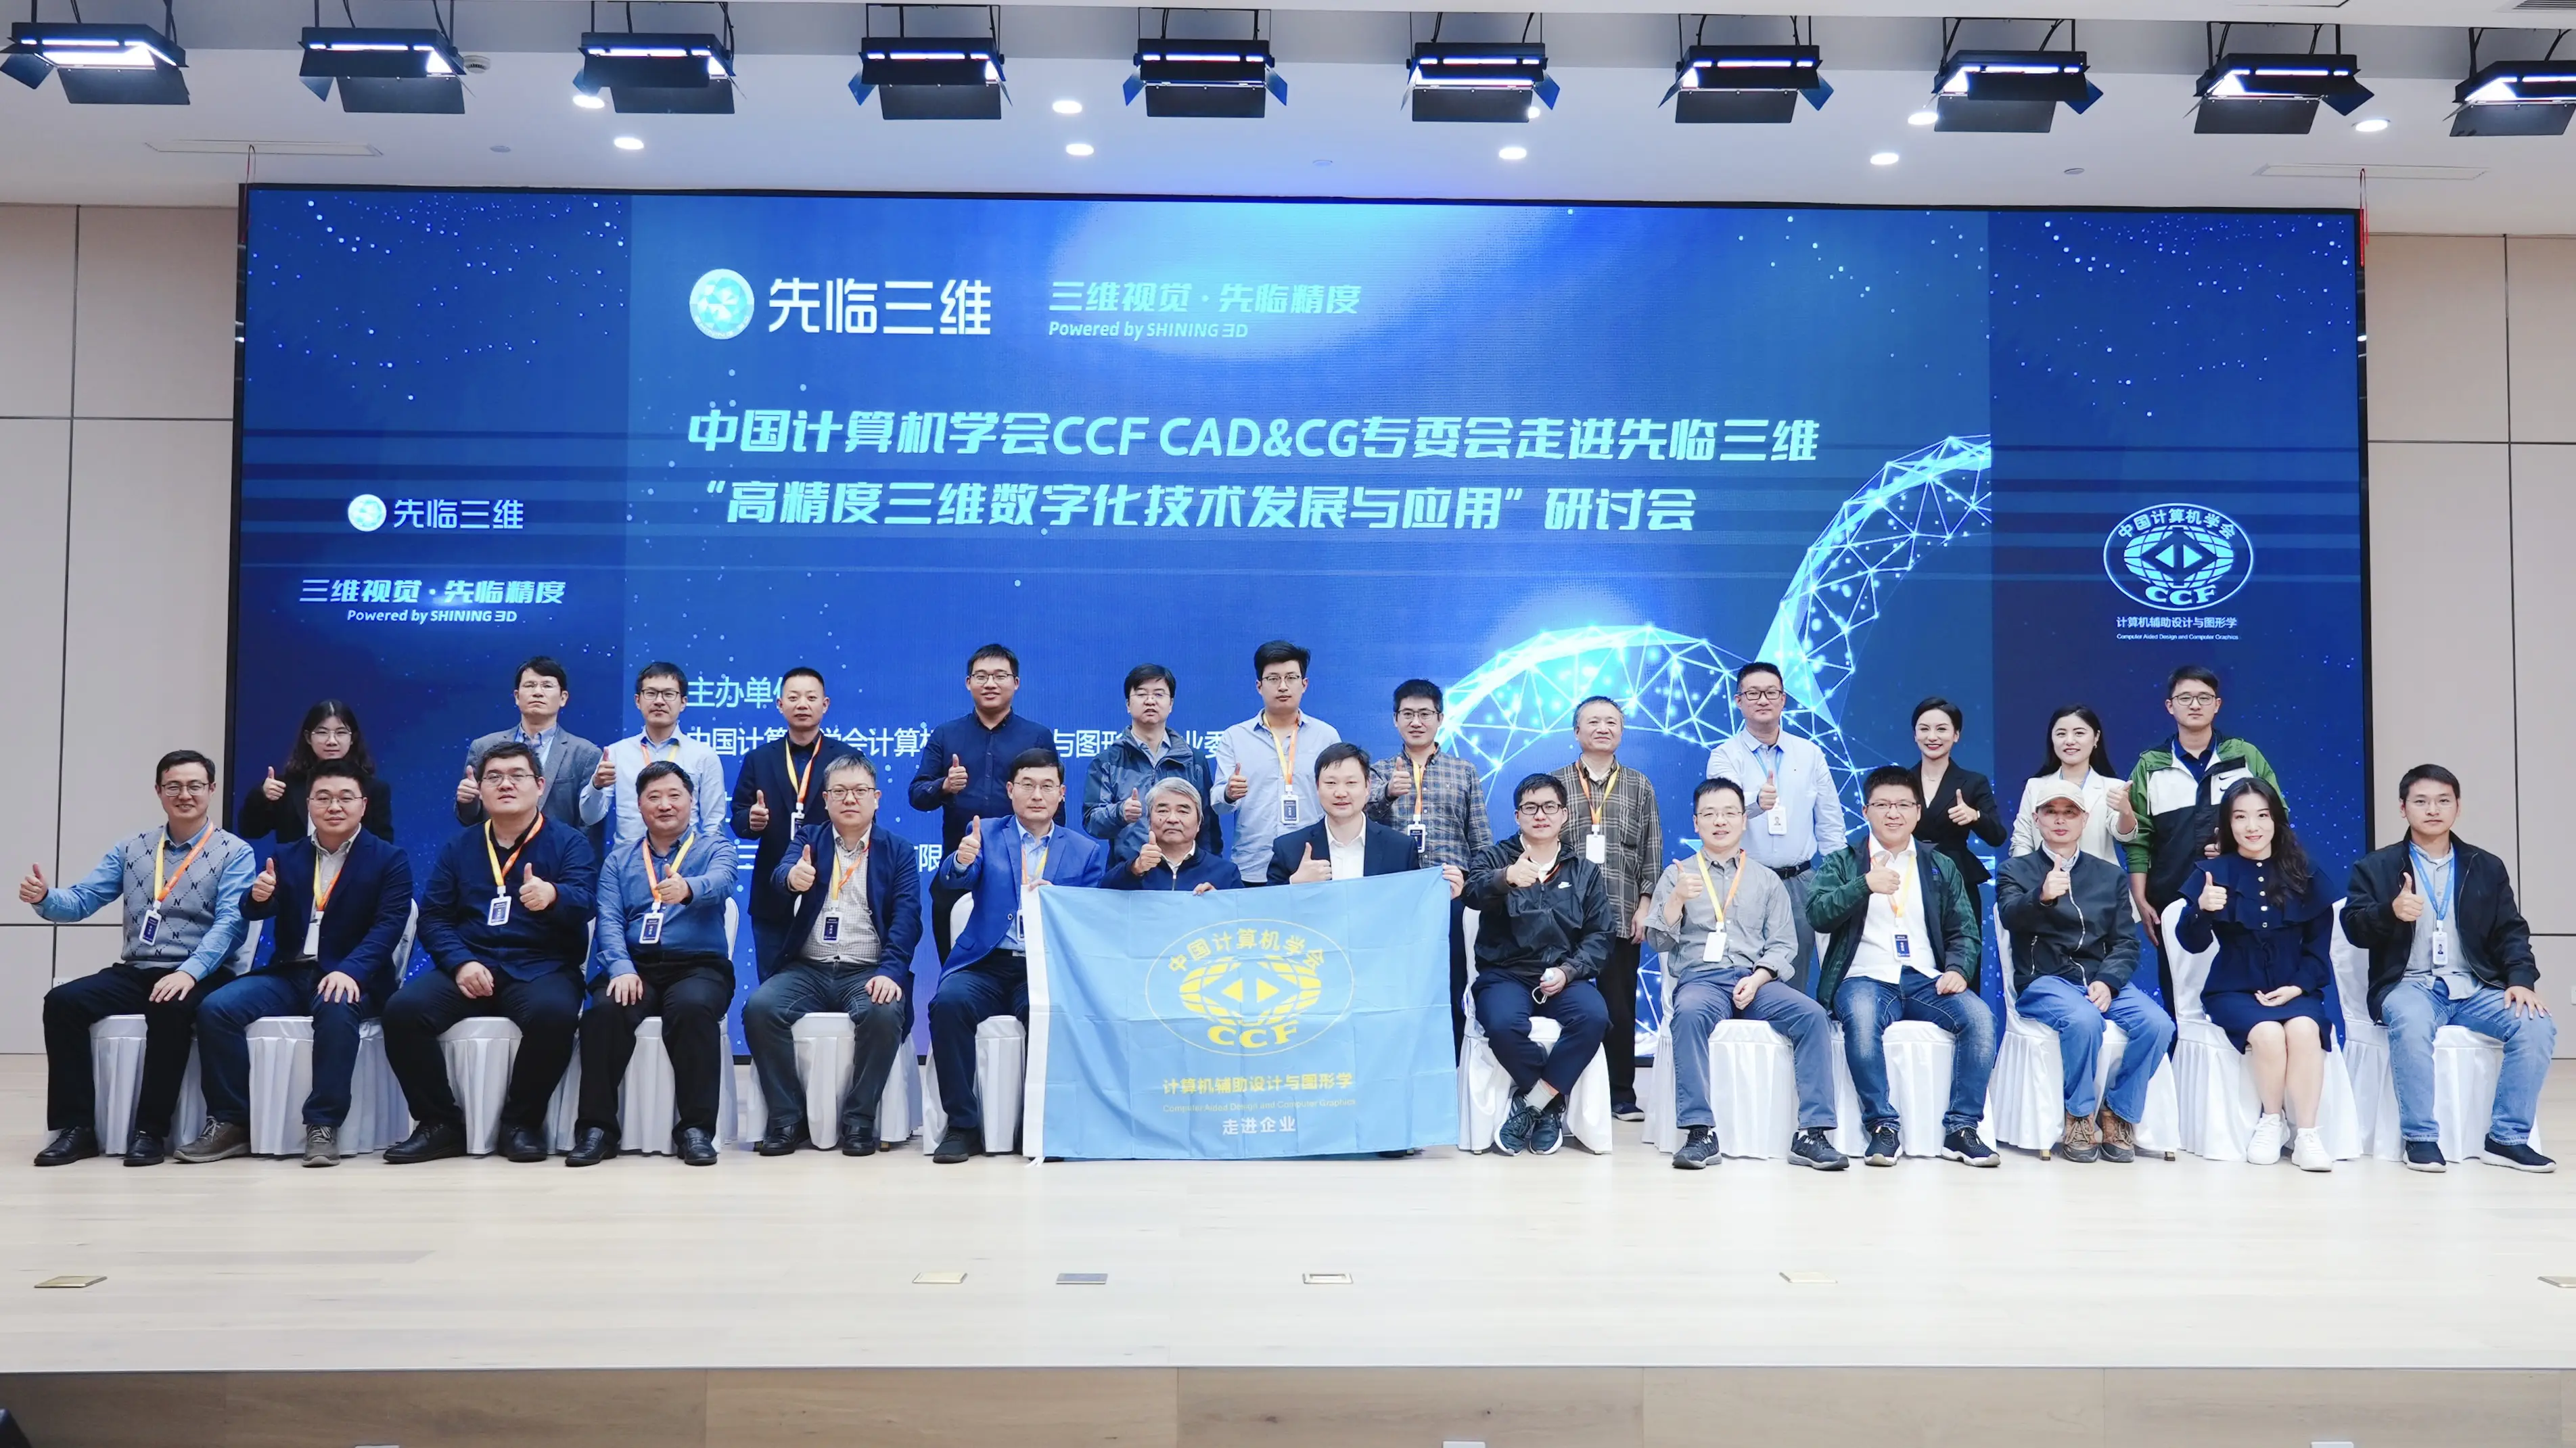 中国计算机学会CCF CAD&CG专委会走进先临三维暨先临三维开放日活动取得圆满成功